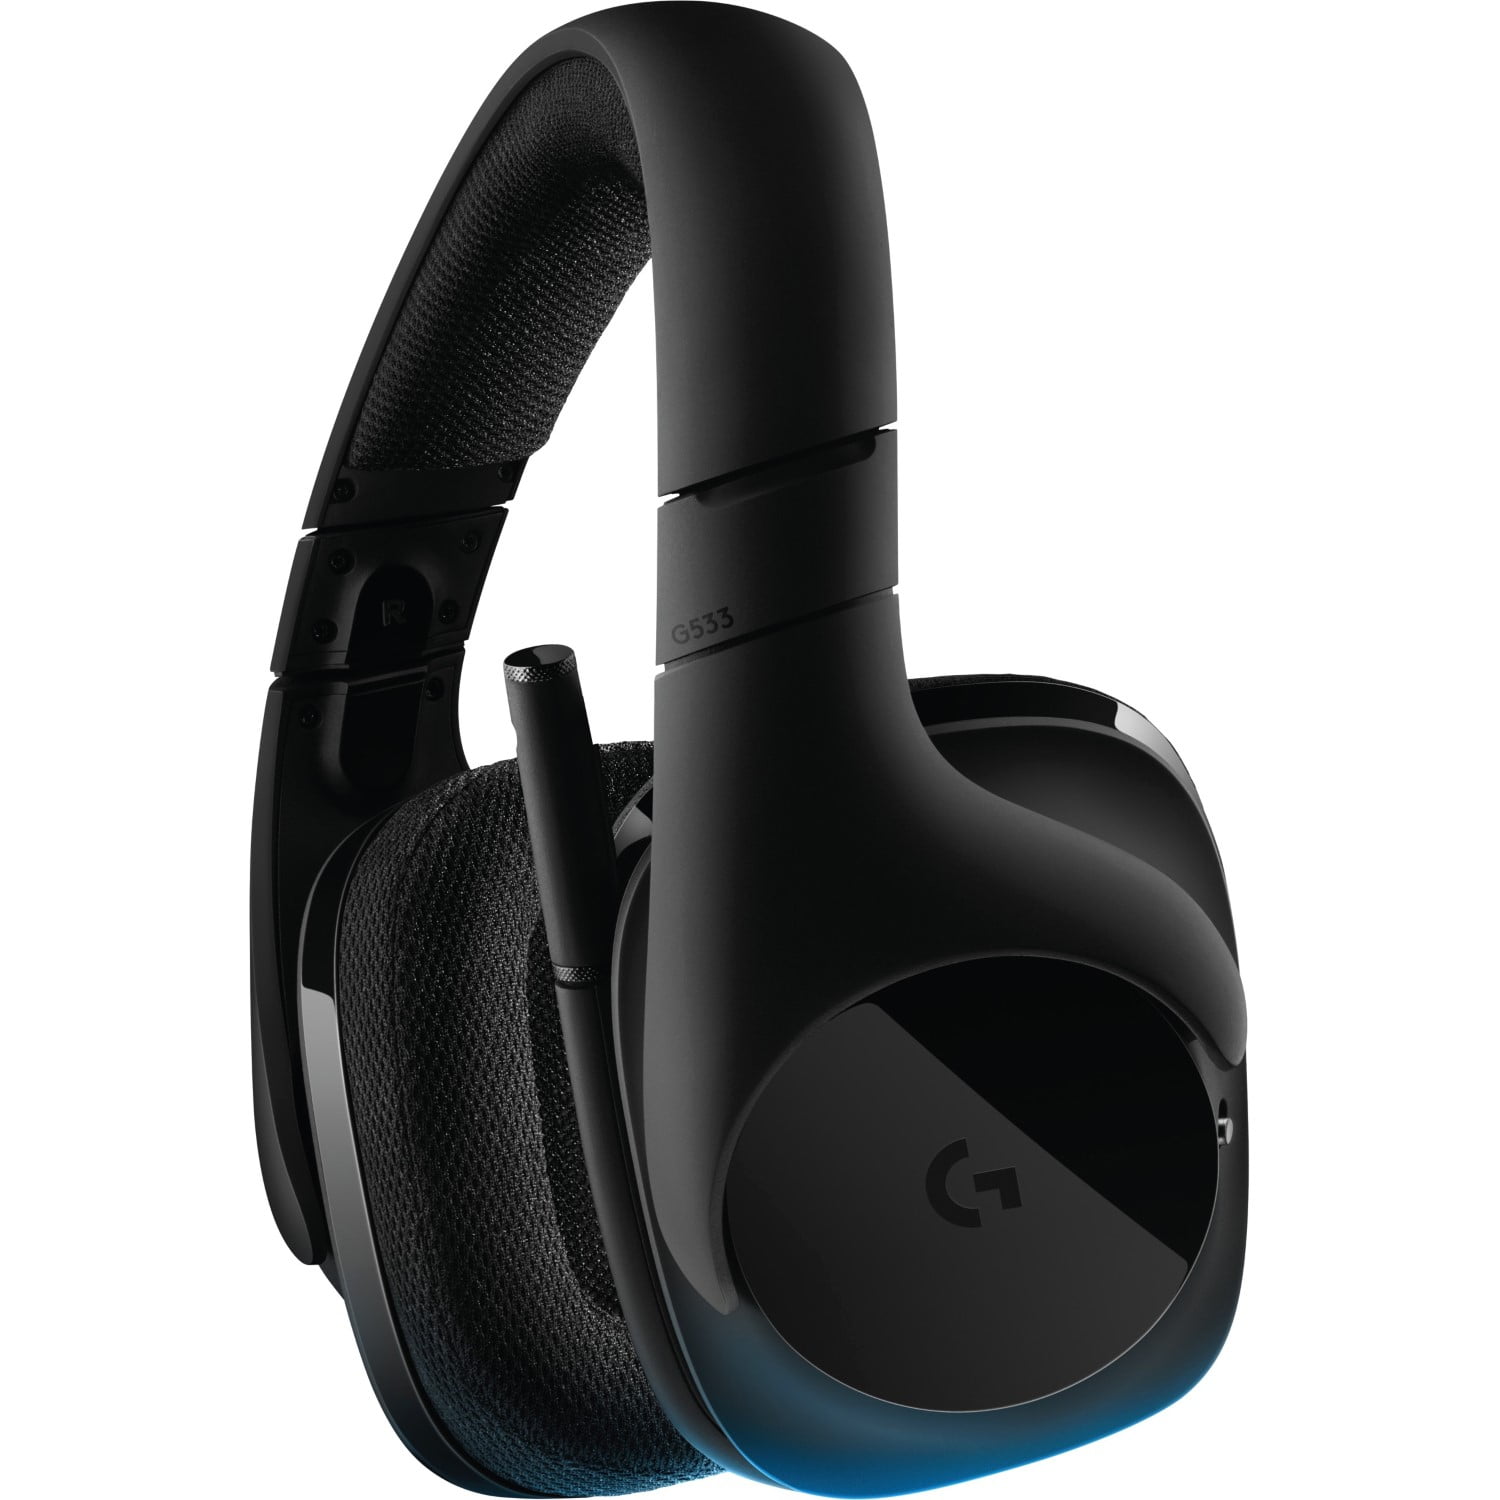 割引クーポン付 G533 Wireless Gaming Headset並行輸入 イヤホン、ヘッドホン FONDOBLAKA